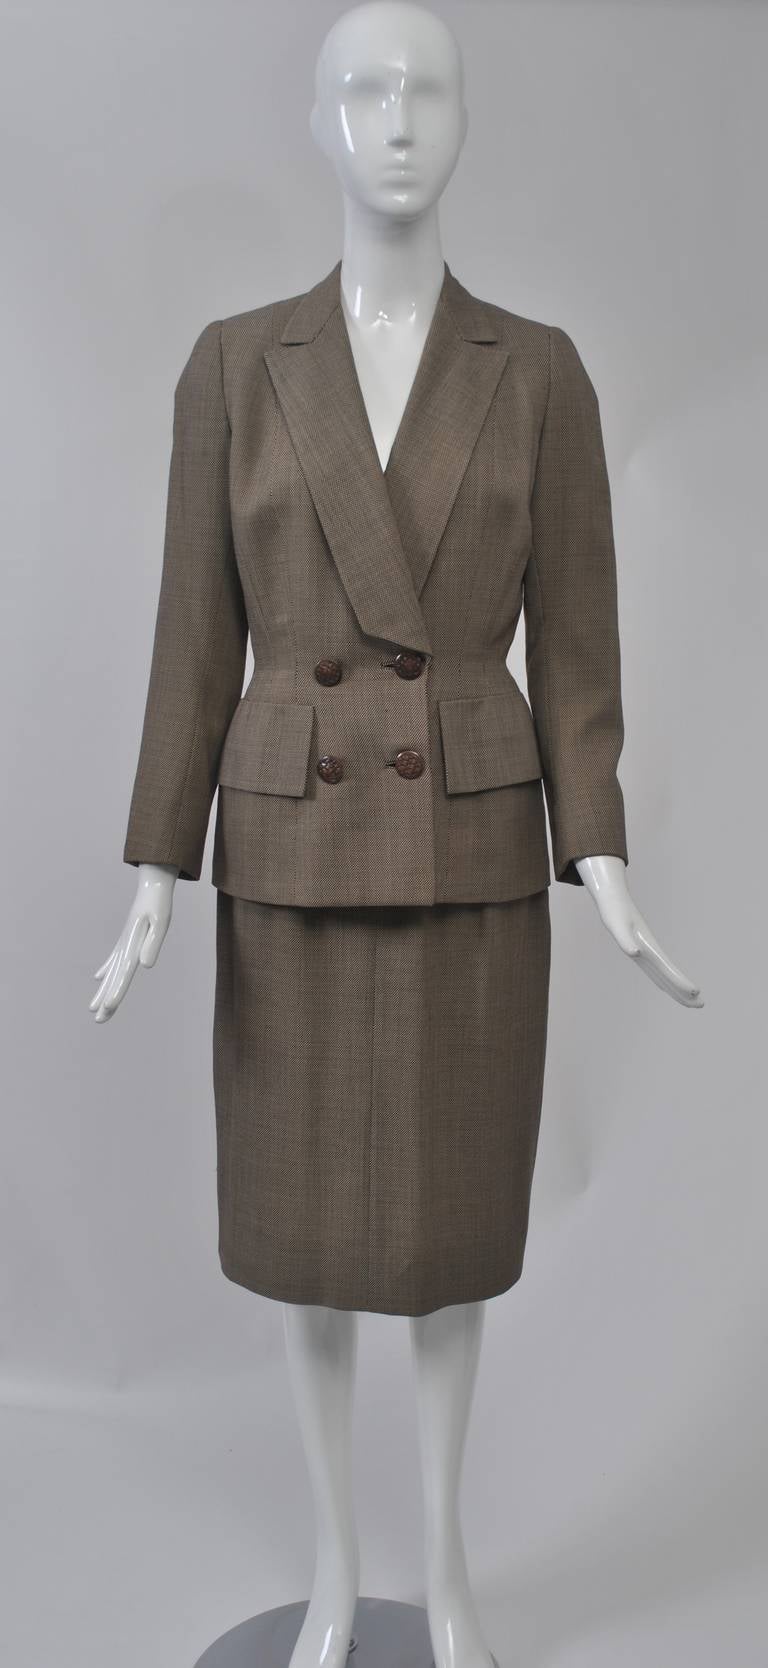 Un style impeccable caractérise ce costume des années 1950, confectionné dans une fine laine tweed marron et blanche. La longue veste de style blazer présente un col châle cranté coupé en diagonale dans le bas, de grands rabats de poche aux hanches